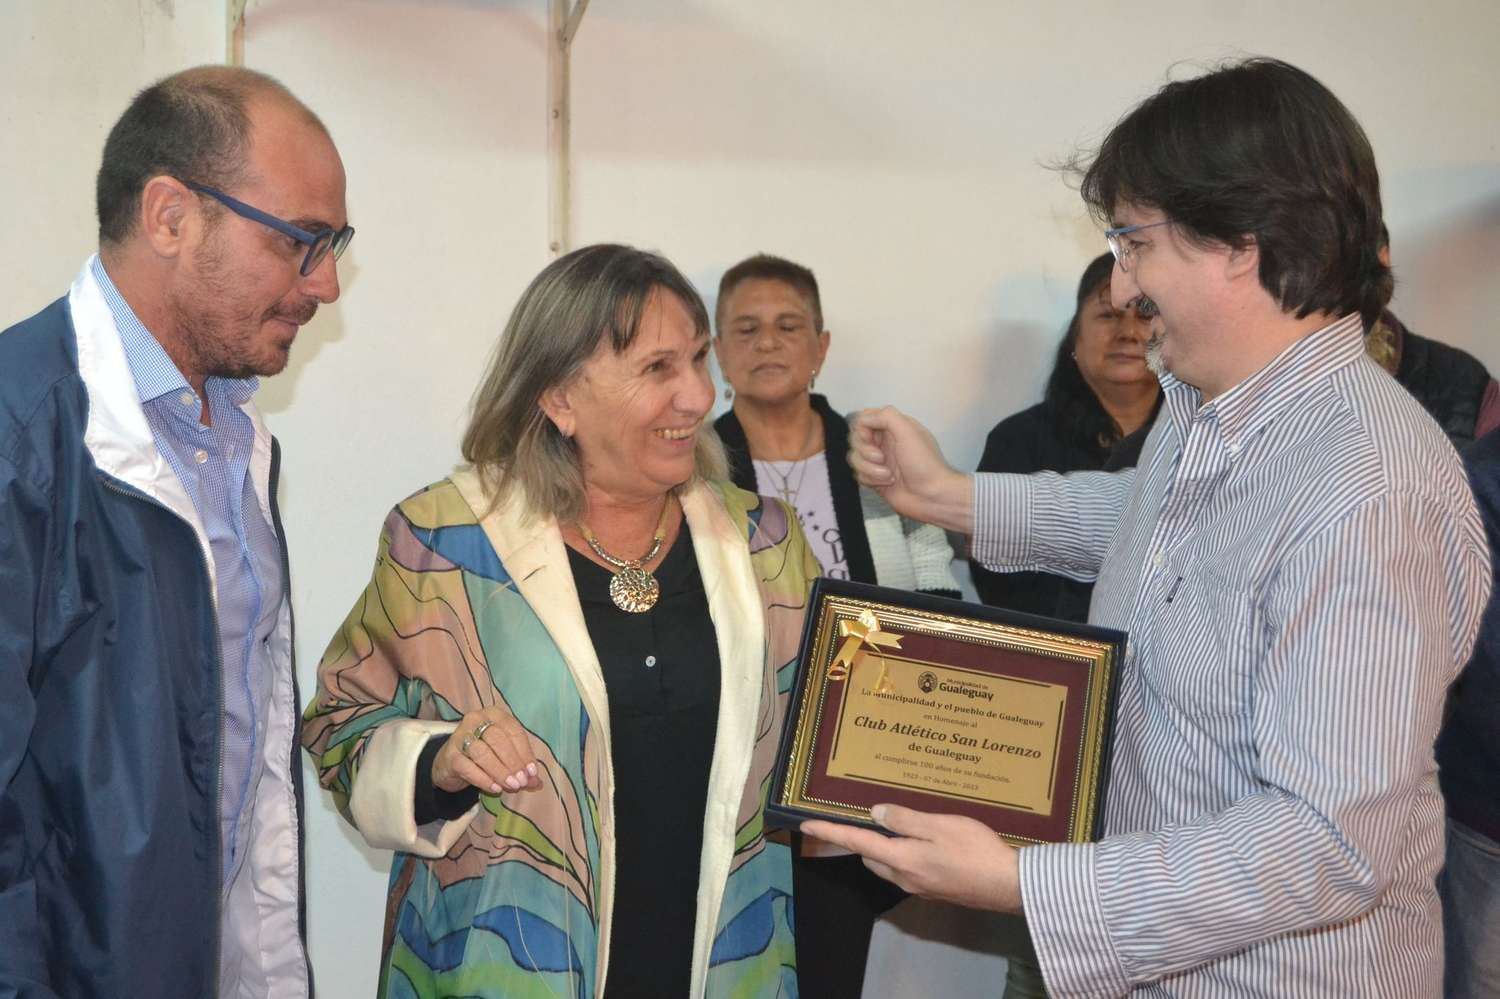 El Secretario de Cultura, Deportes y Turismo de la Municipalidad Ricardo Lupi y Secretaria de Desarrollo Humano-Municipalidad de Gualeguay Dorita Bogdan, le entregaron una plaqueta al presidente Luis Alarcon Sciutto por el Centenario.